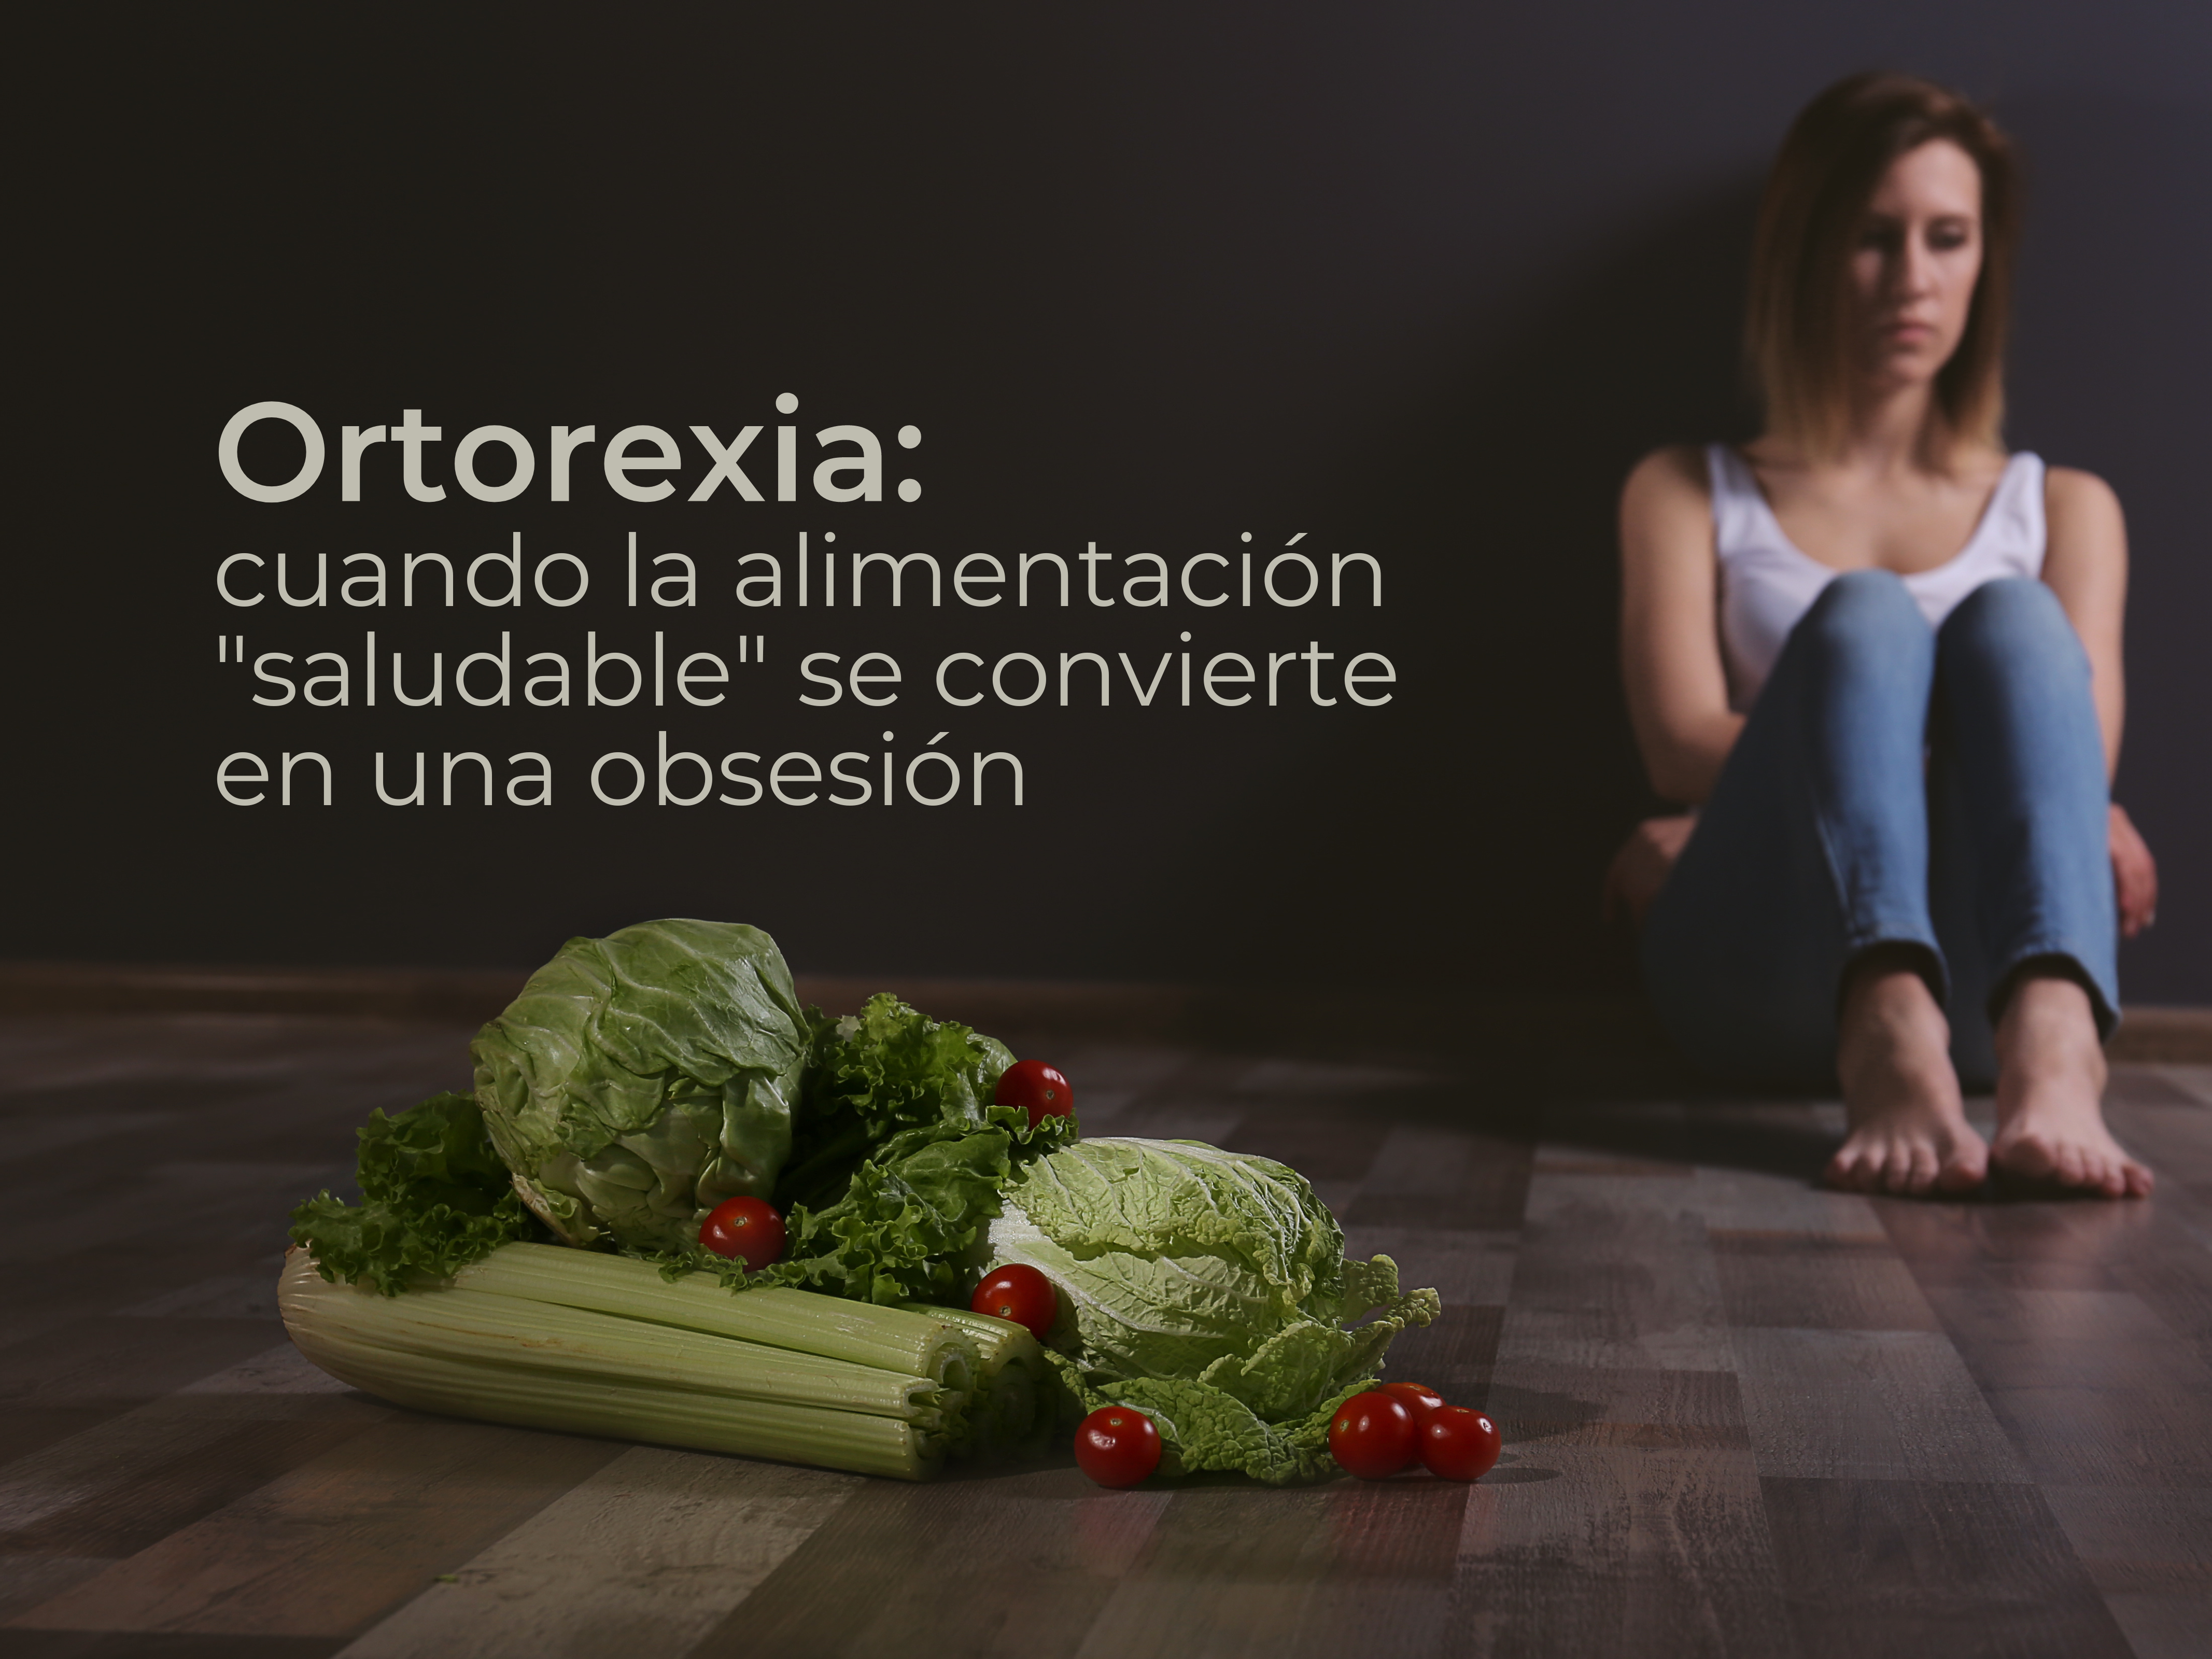 Ortorexia: cuando la alimentación "saludable" se convierte en una obsesión